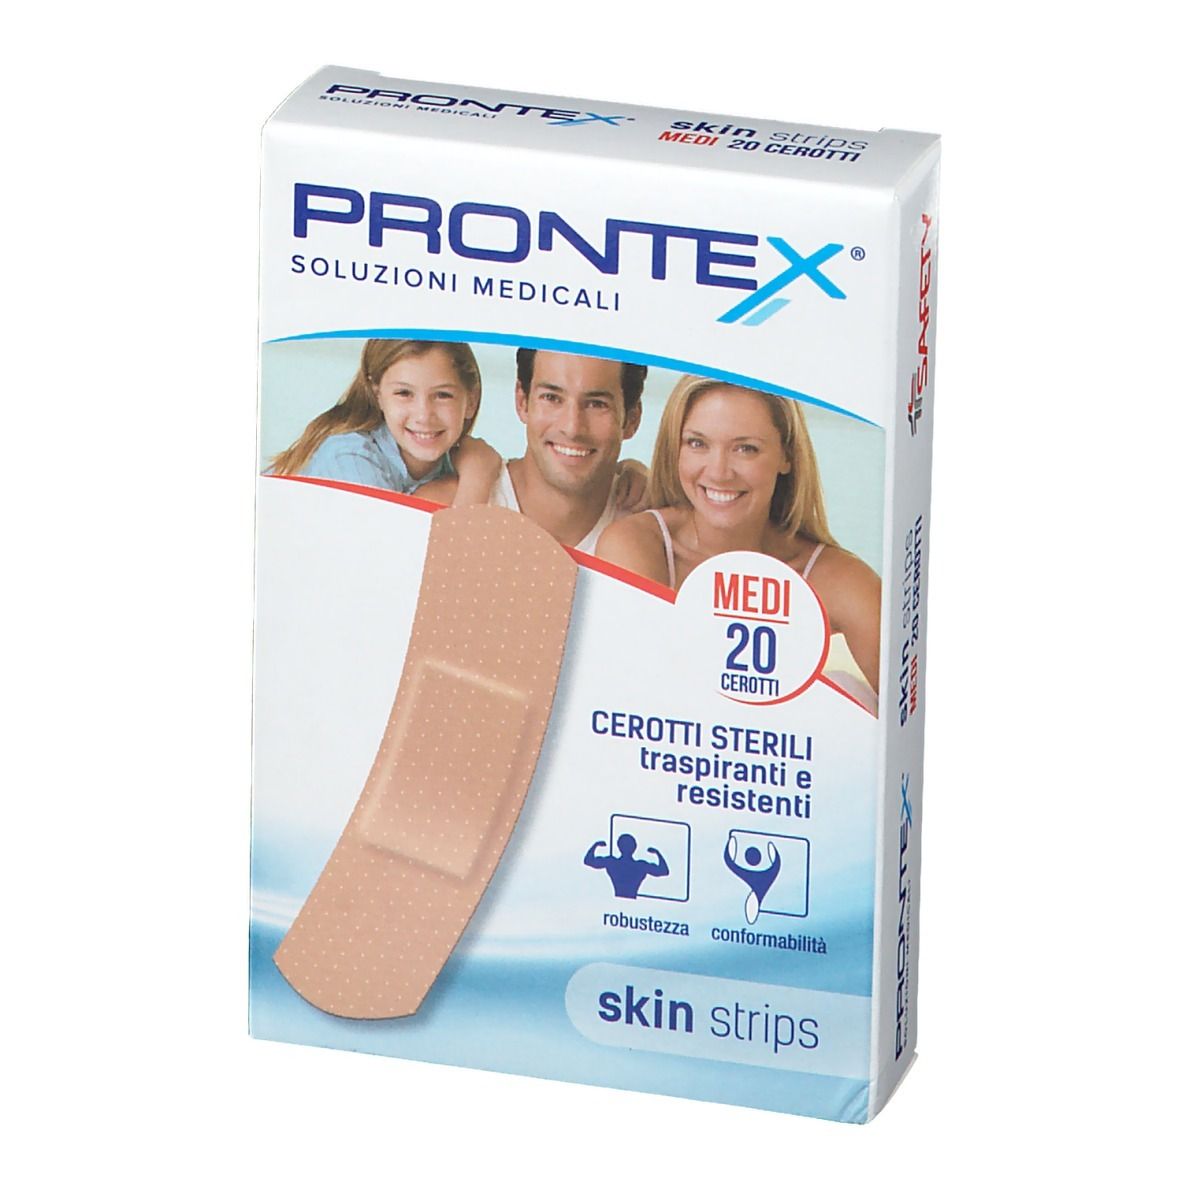 Safety Prontex Skin Strips Cerotti Sterili Traspiranti E Resistenti Medio 20 Pezzi